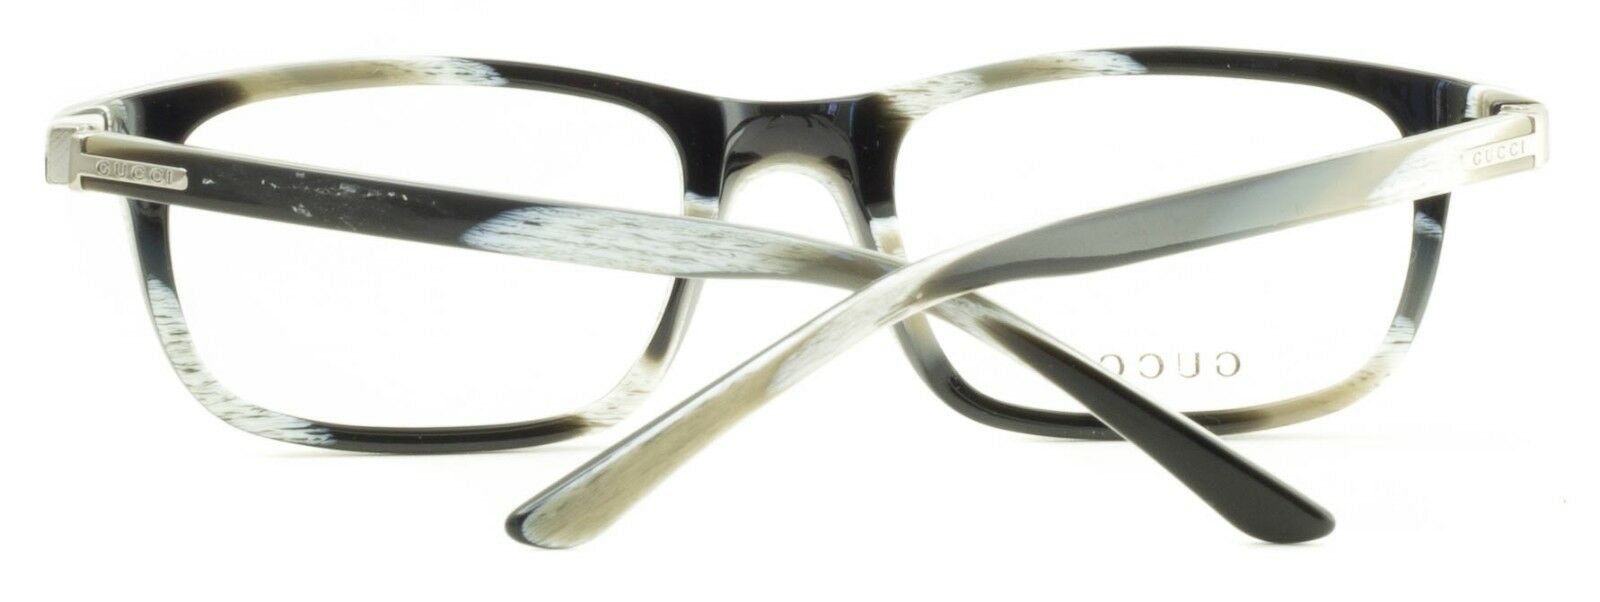 GUCCI GG 1436 5MY Eyewear FRAMES NEW Glasses RX Optical Eyeglasses ITALY - BNIB